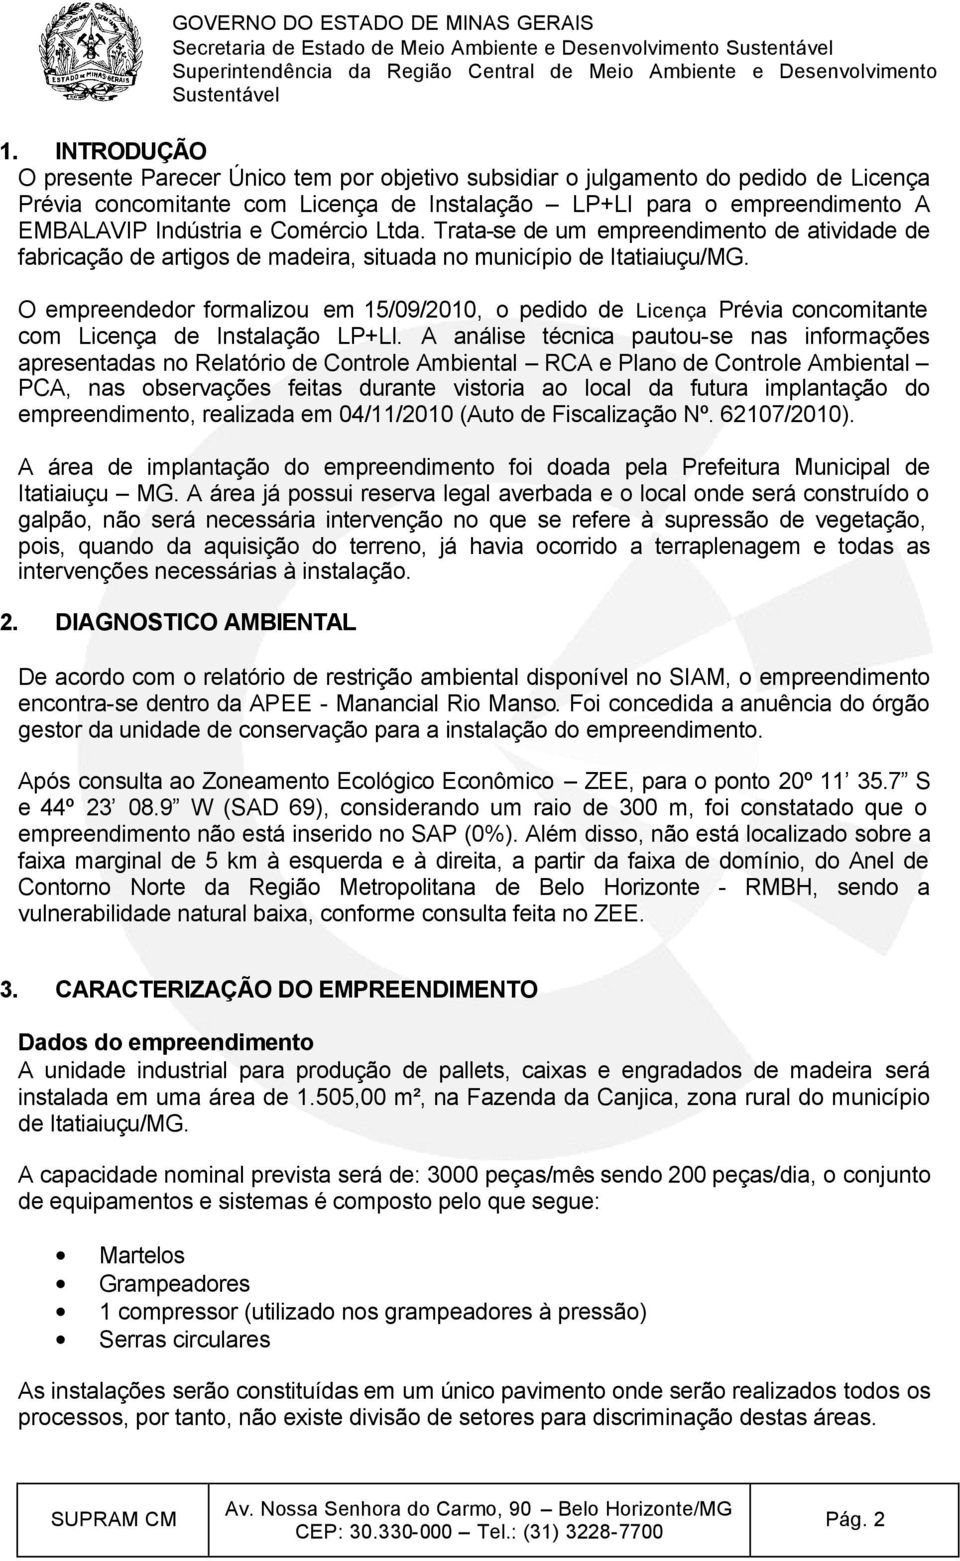 O empreendedor formalizou em 15/09/2010, o pedido de Licença Prévia concomitante com Licença de Instalação LP+LI.